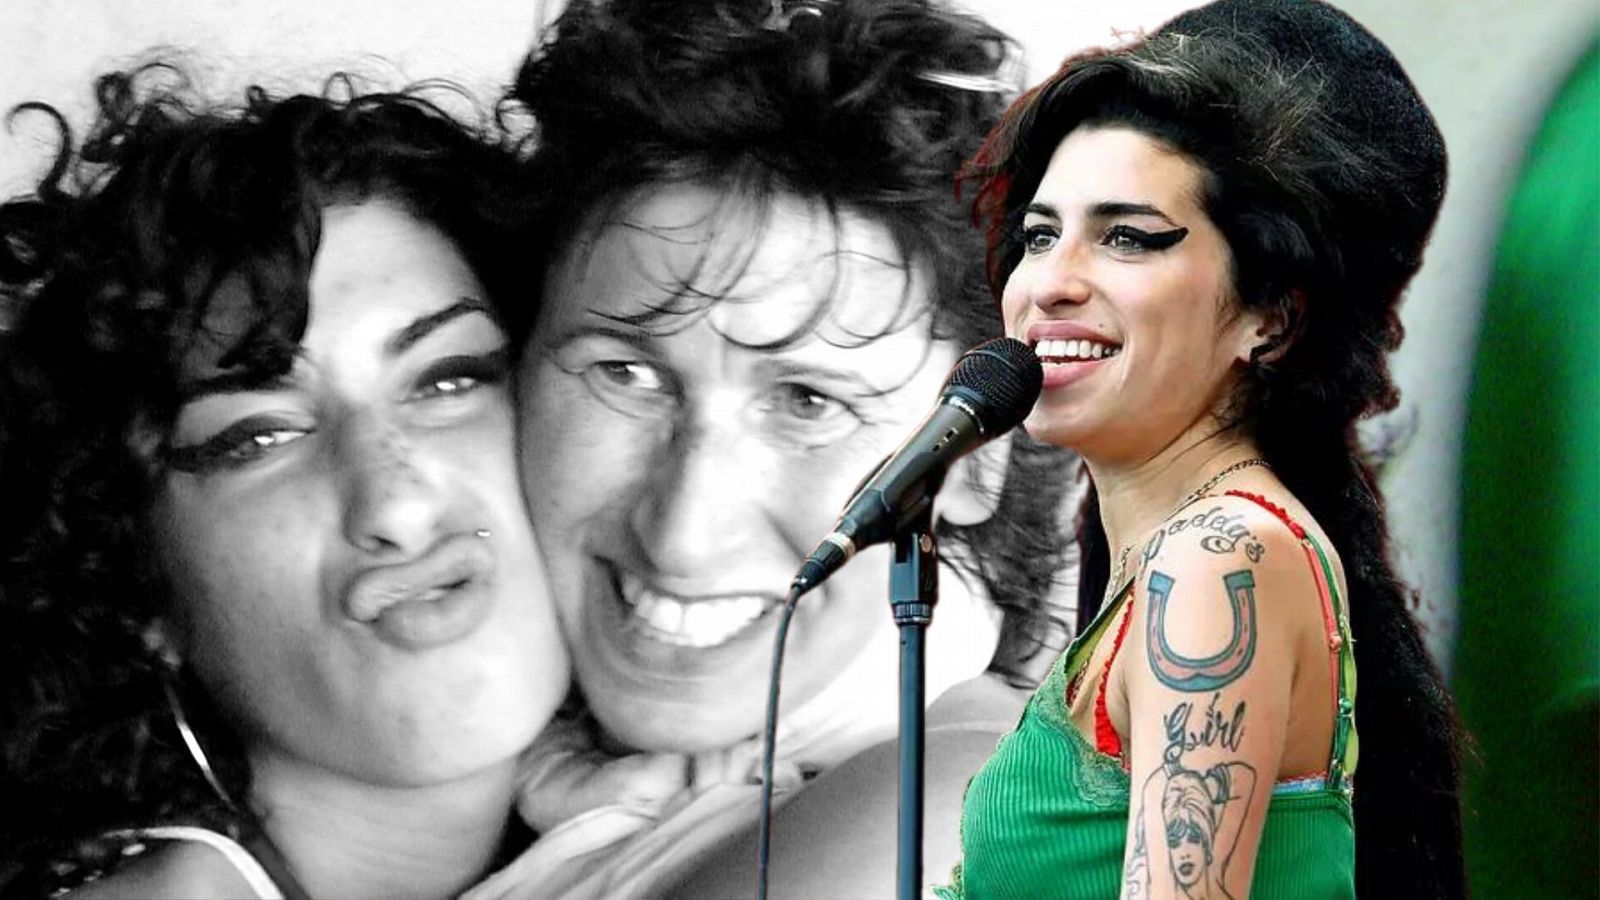 La madre de Amy Winehouse reclama la memoria de su hija en 'Reclaiming Amy' (2021)